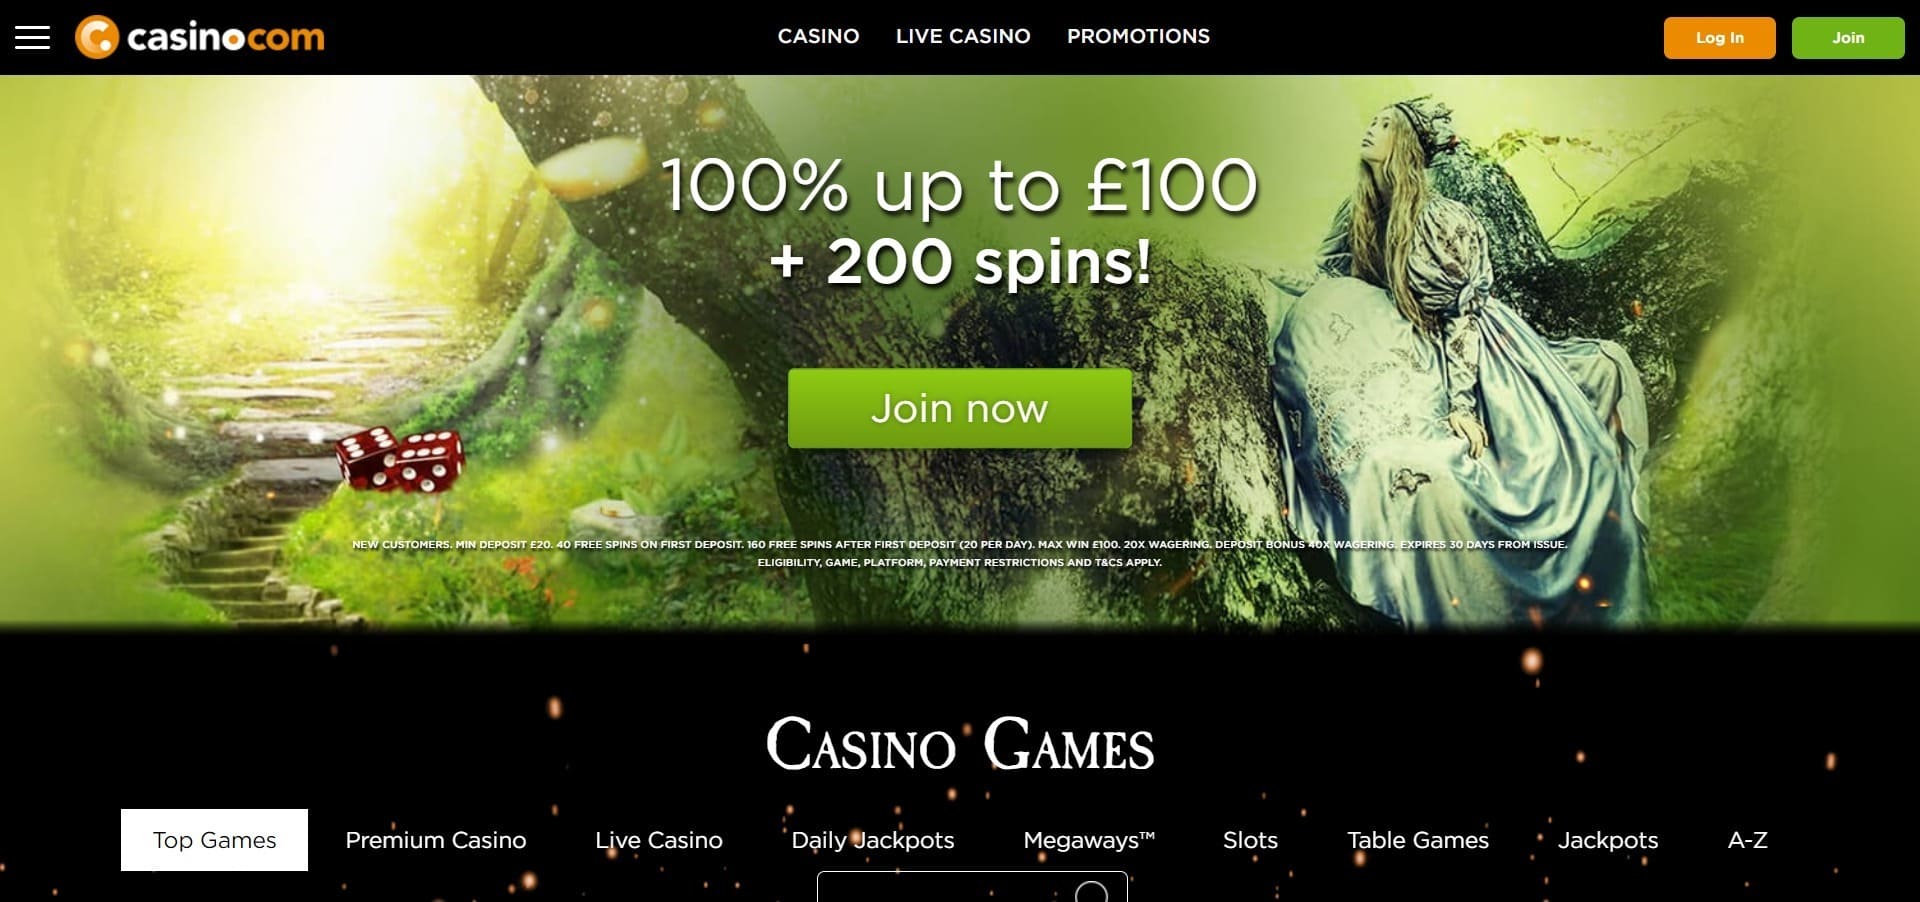 Official website of the Casino.com